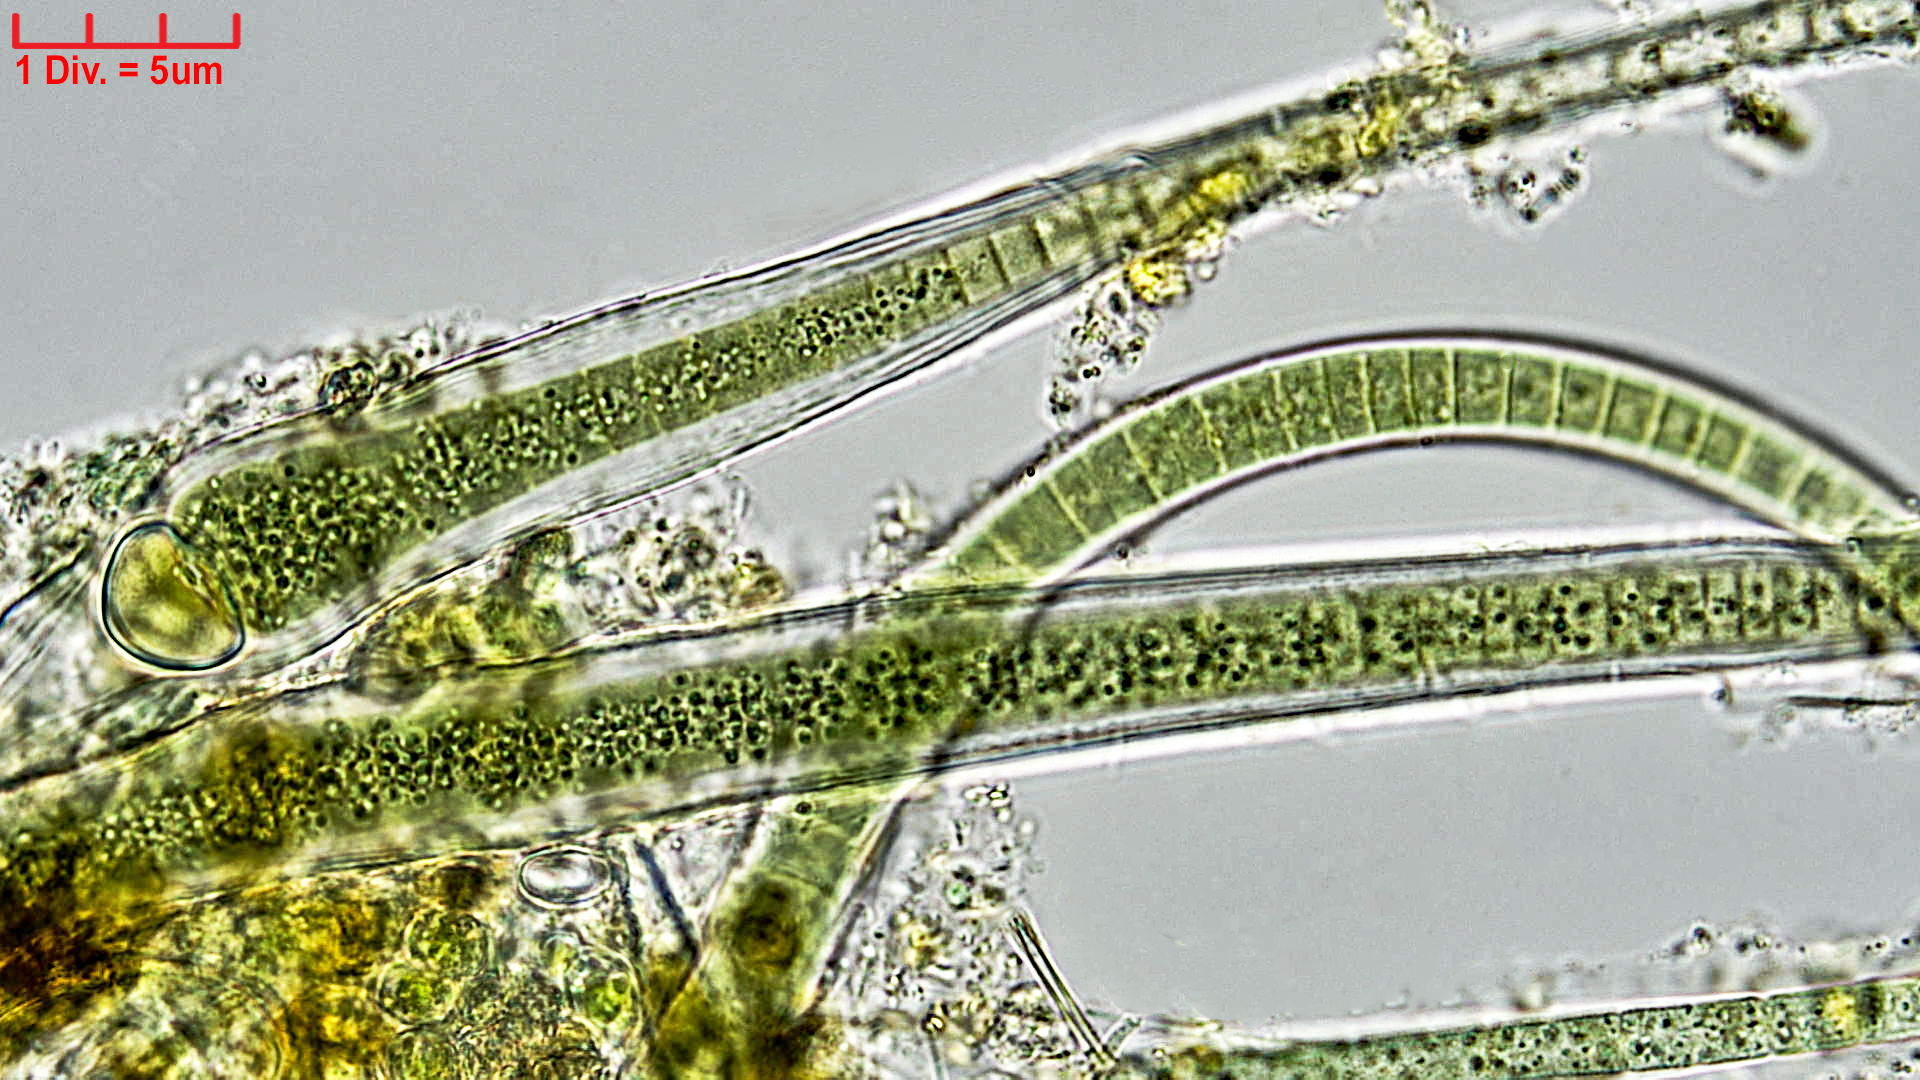 ././Cyanobacteria/Nostocales/Rivulariaceae/Calothrix/fusca/calothrix-fusca-434.jpg